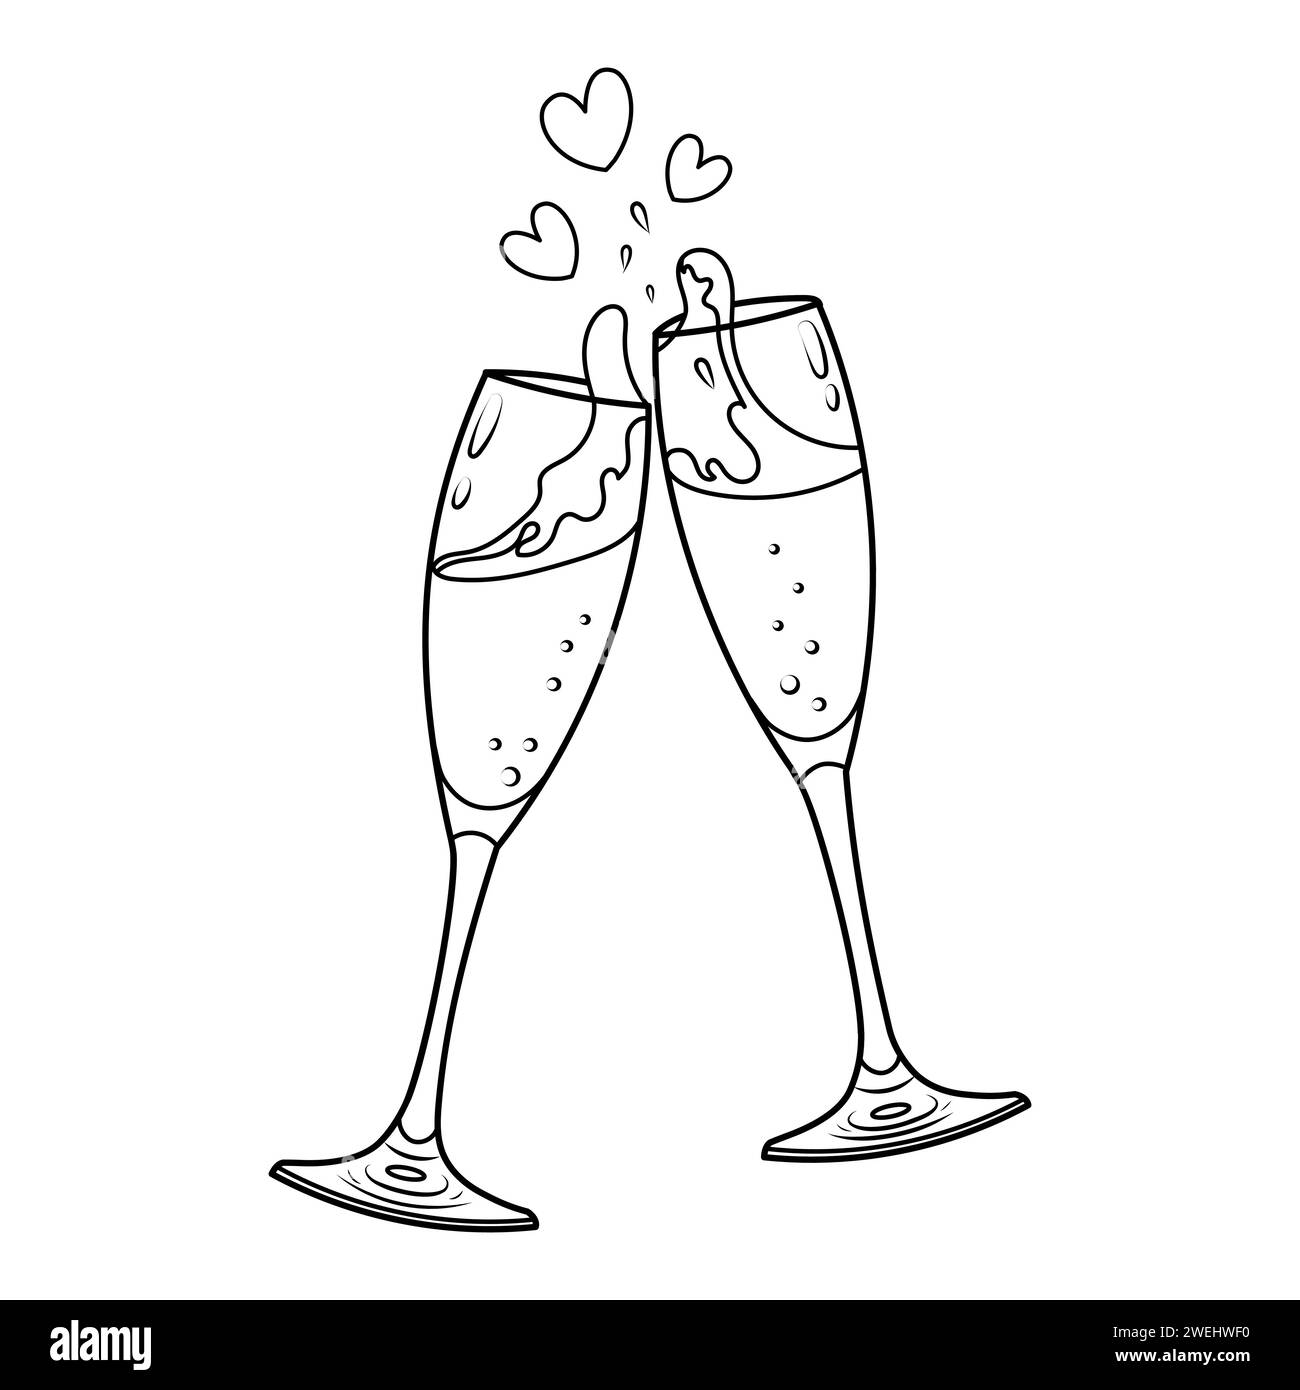 Vektor-Illustration von zwei Champagnergläsern für valentinstag. Doodle-Skizze von klirrenden Gläsern. Malbuch-Seite Stock Vektor